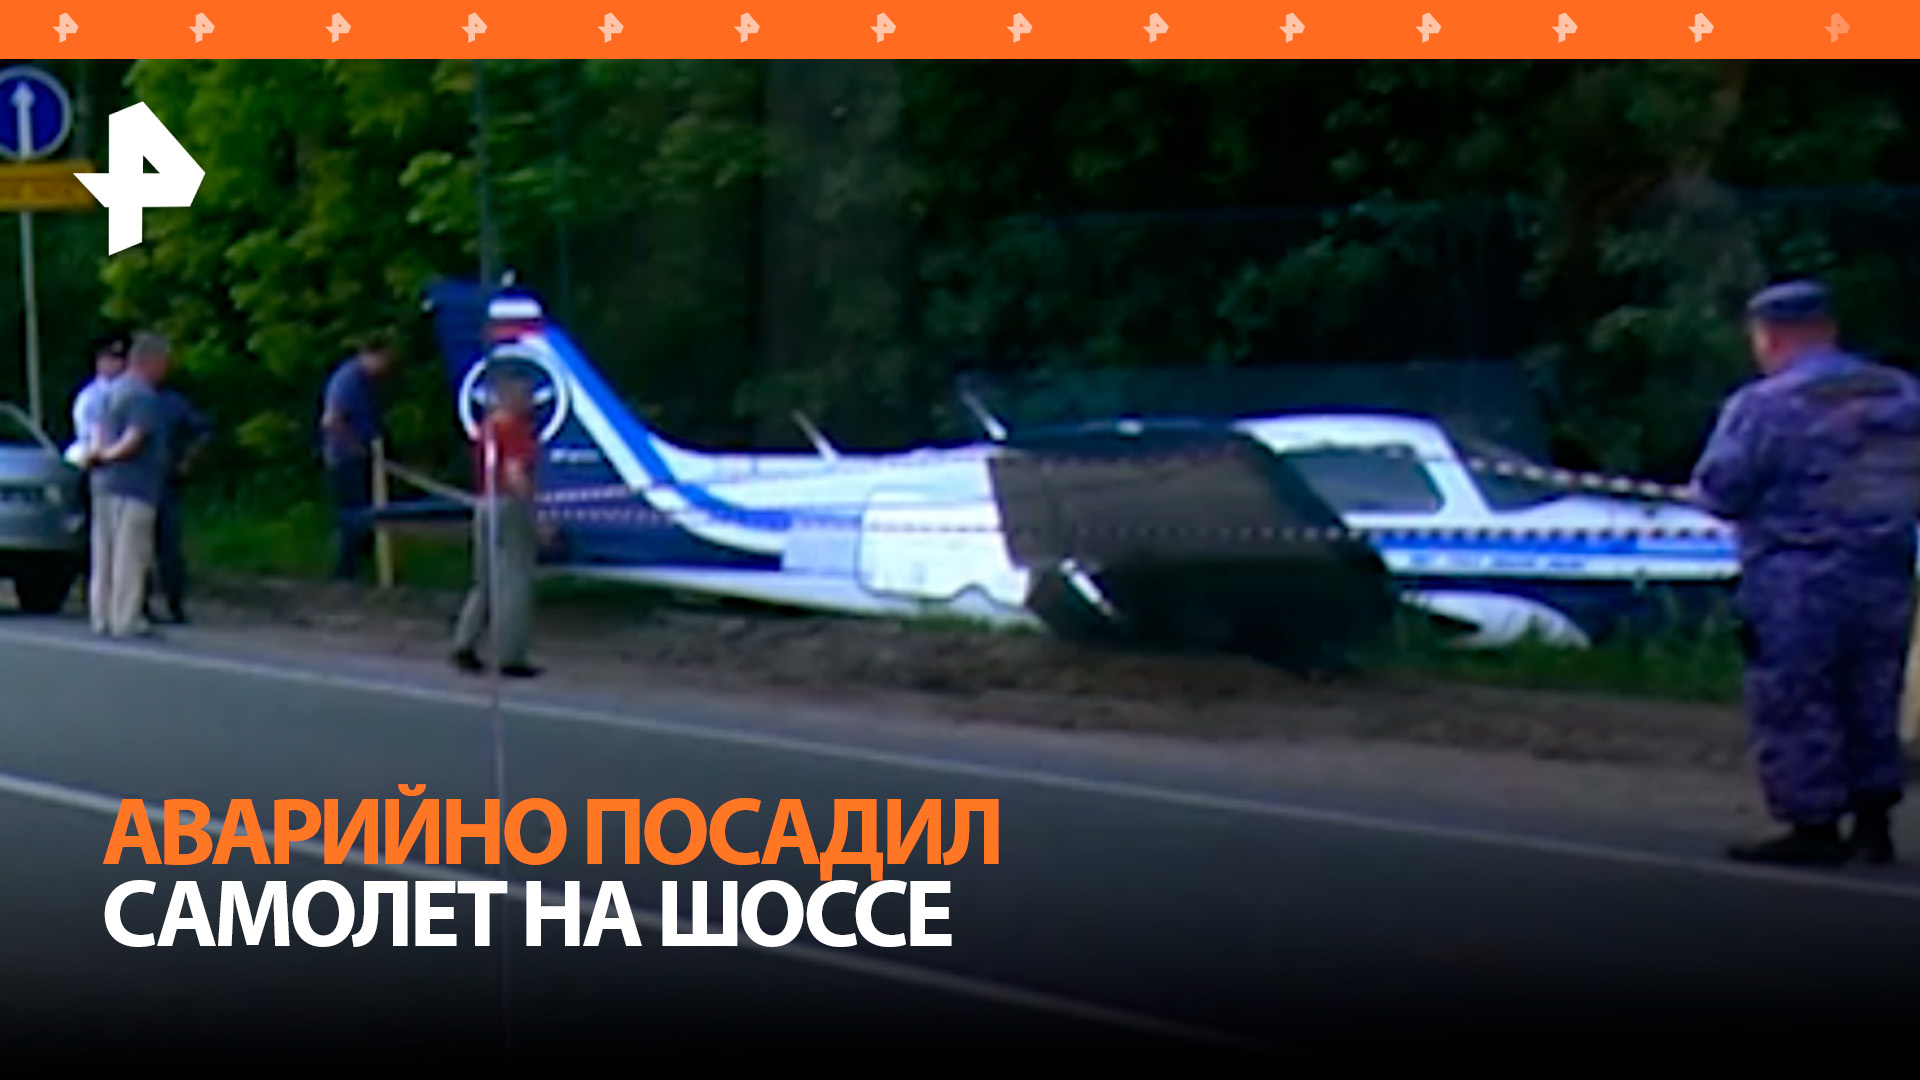 Легкомоторный самолет совершил аварийную посадку на шоссе под Москвой / РЕН Новости